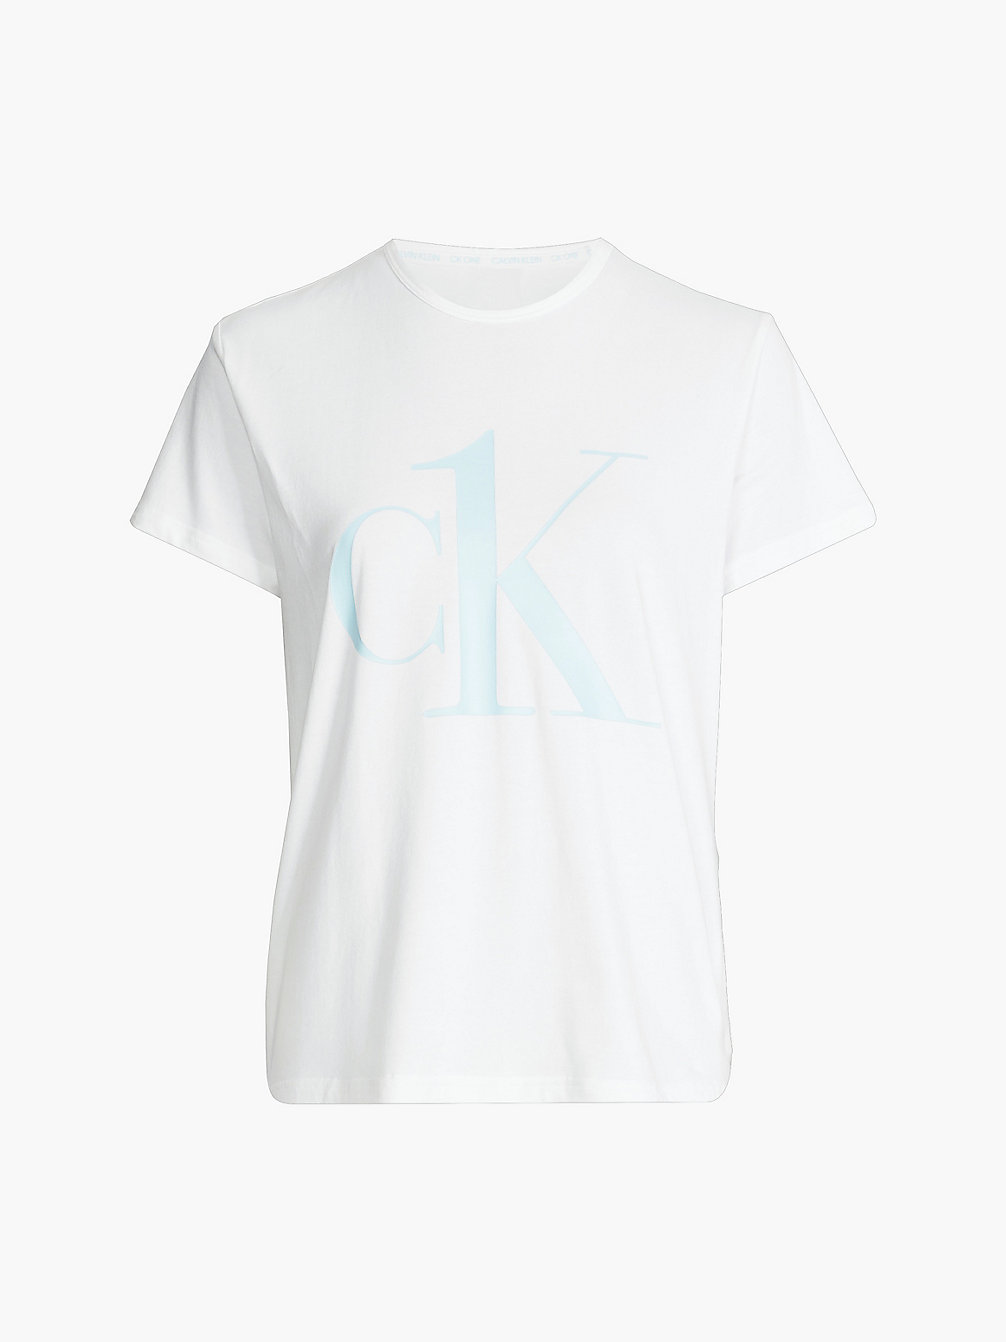 WHITE W/ PALEST BLUE LOGO > Пижамный топ - CK One > undefined Женщины - Calvin Klein